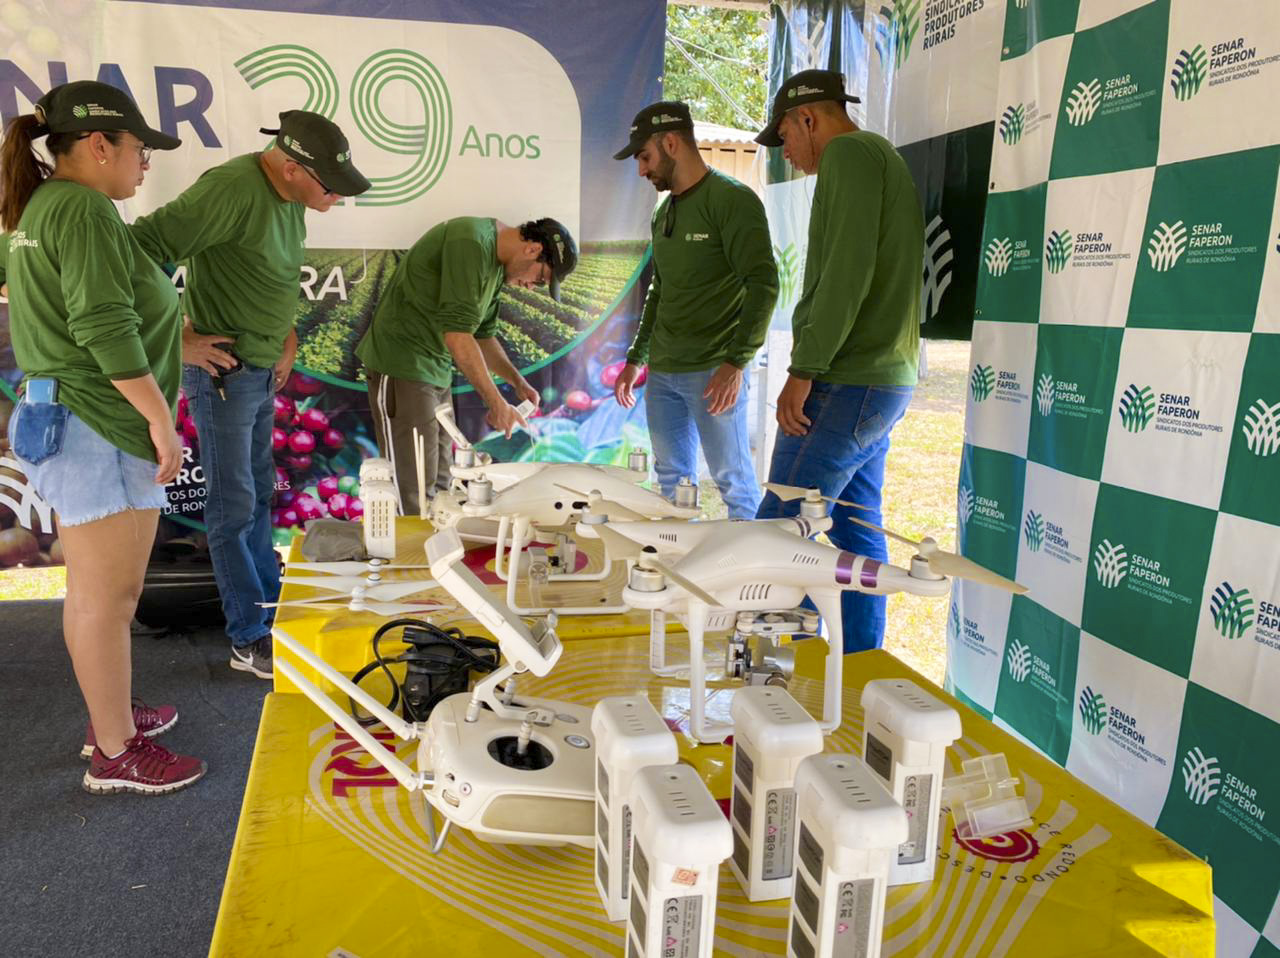 Curso de operação de drones agrícolas no Senar já beneficiou 1600 produtores